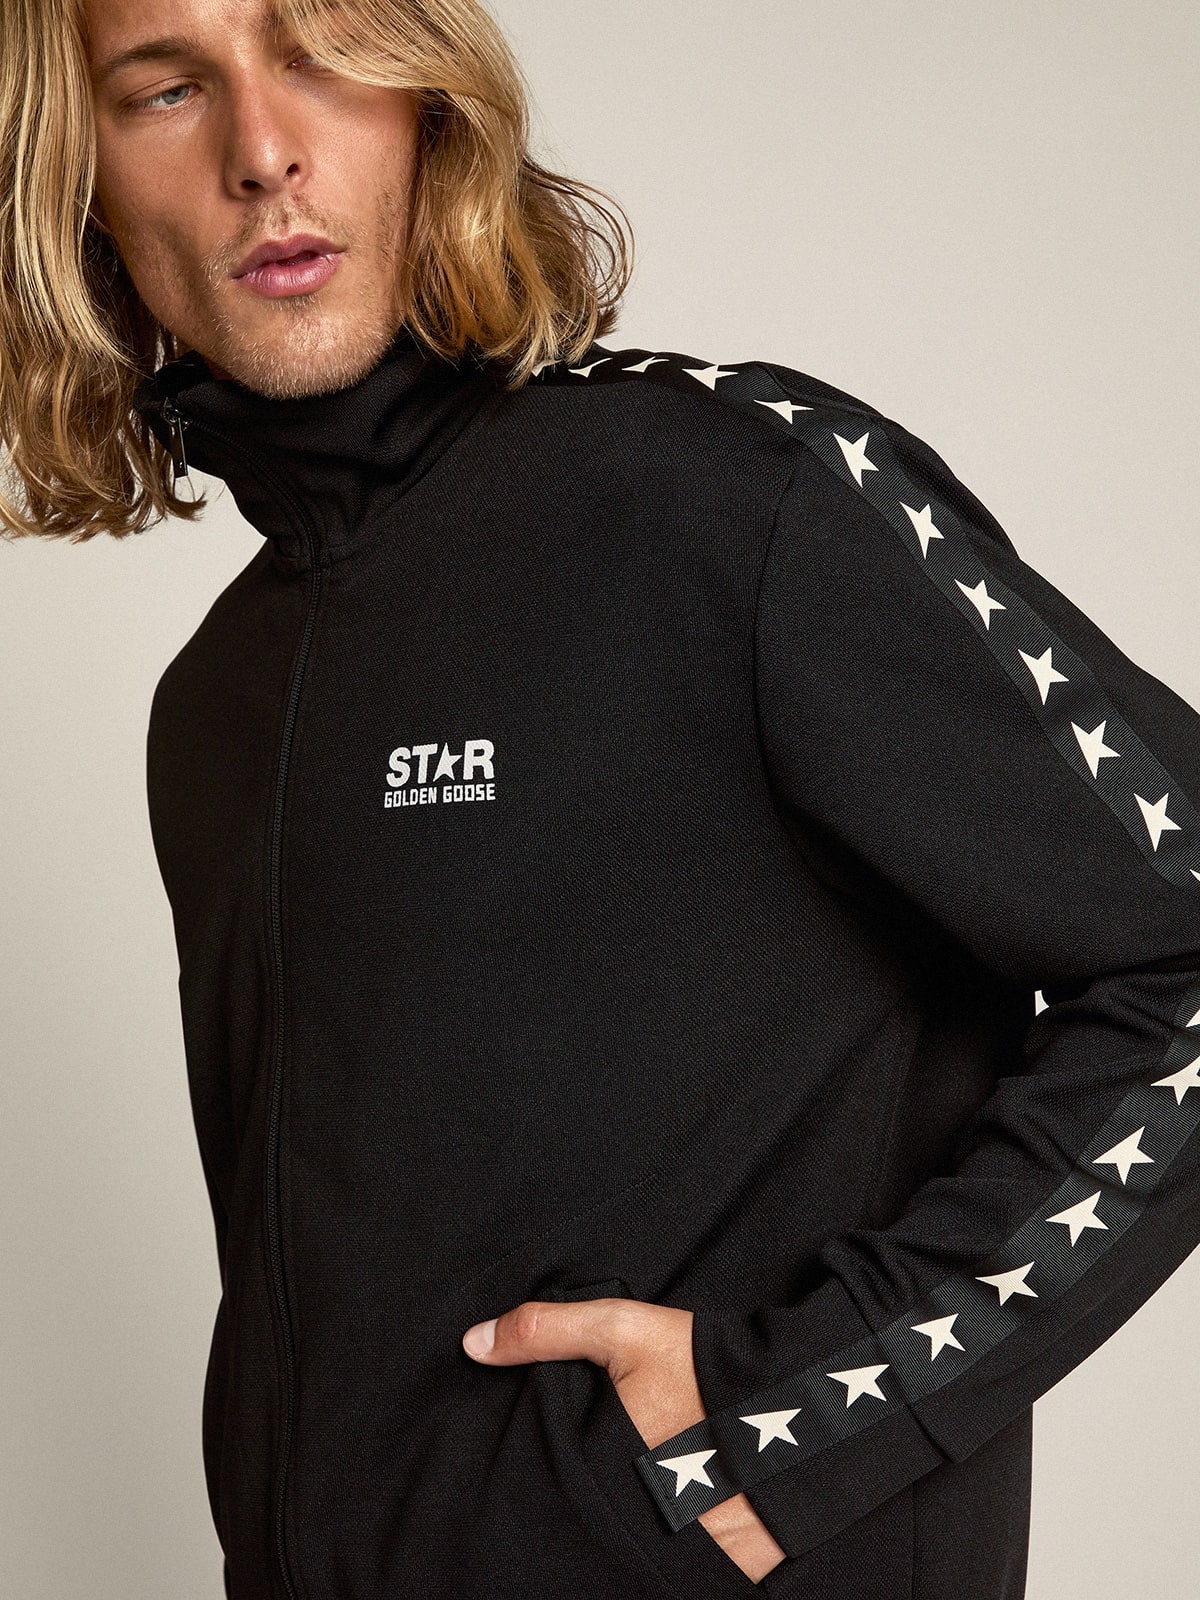 Men’s black zipped sweatshirt with white stars - 3